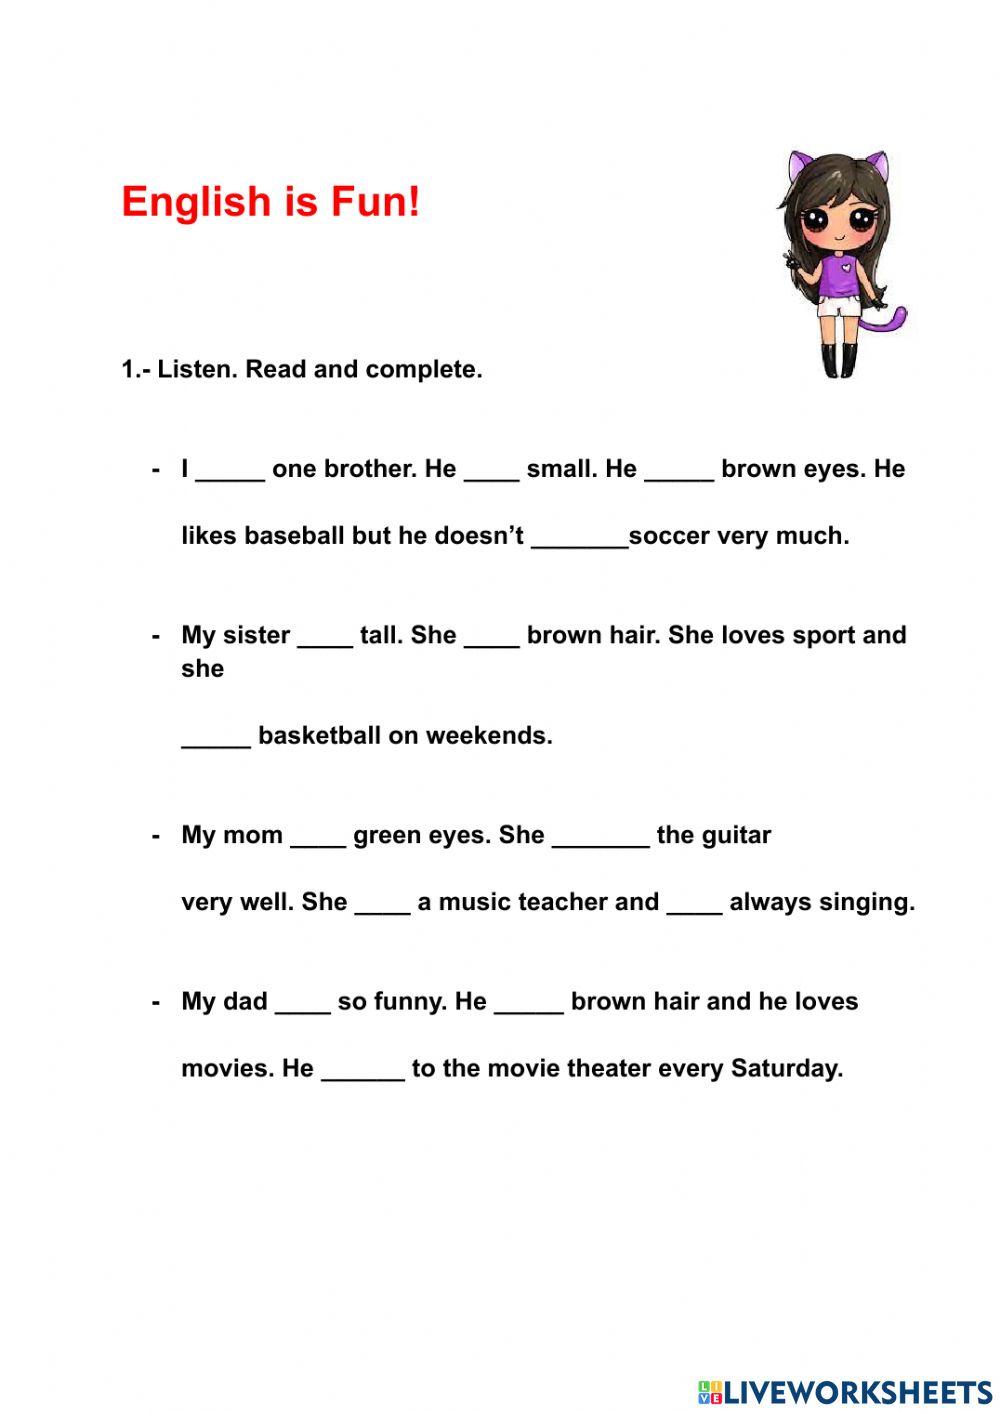 English is Fun!